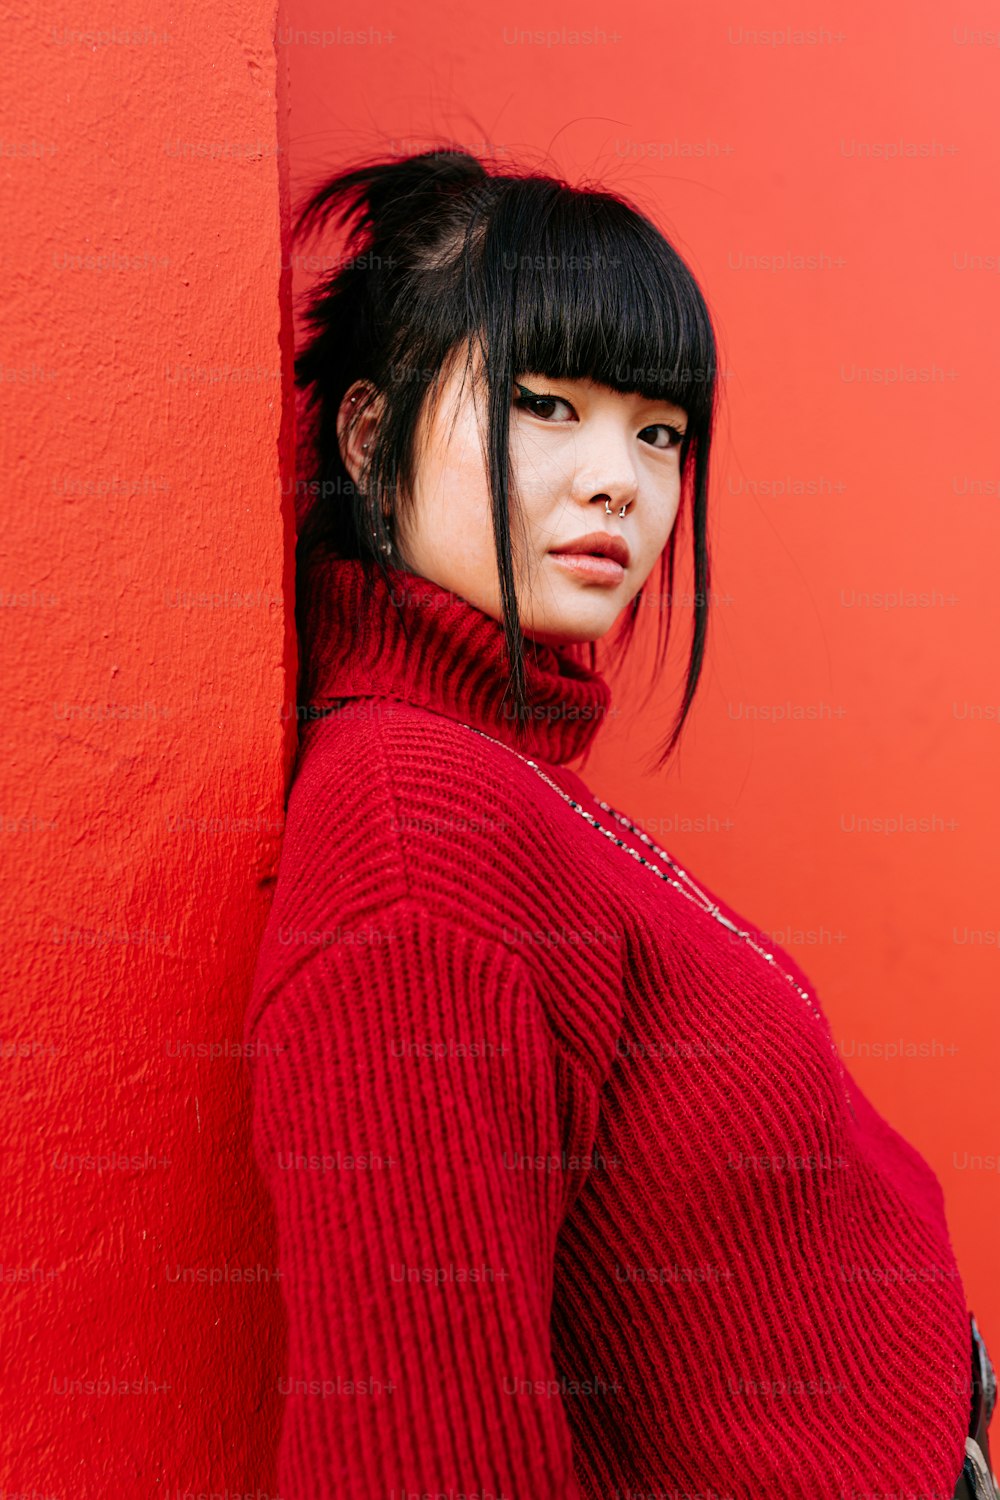 Eine Frau in einem roten Pullover lehnt an einer roten Wand